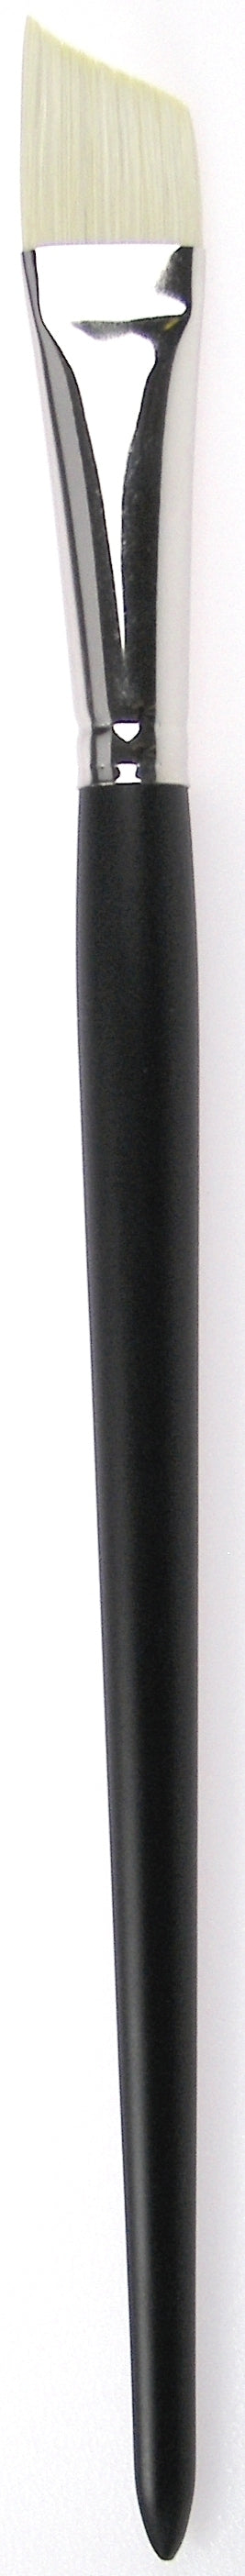 Zahn Oil-Acrylic Brush Angular, Brislon, 9958 Size 20